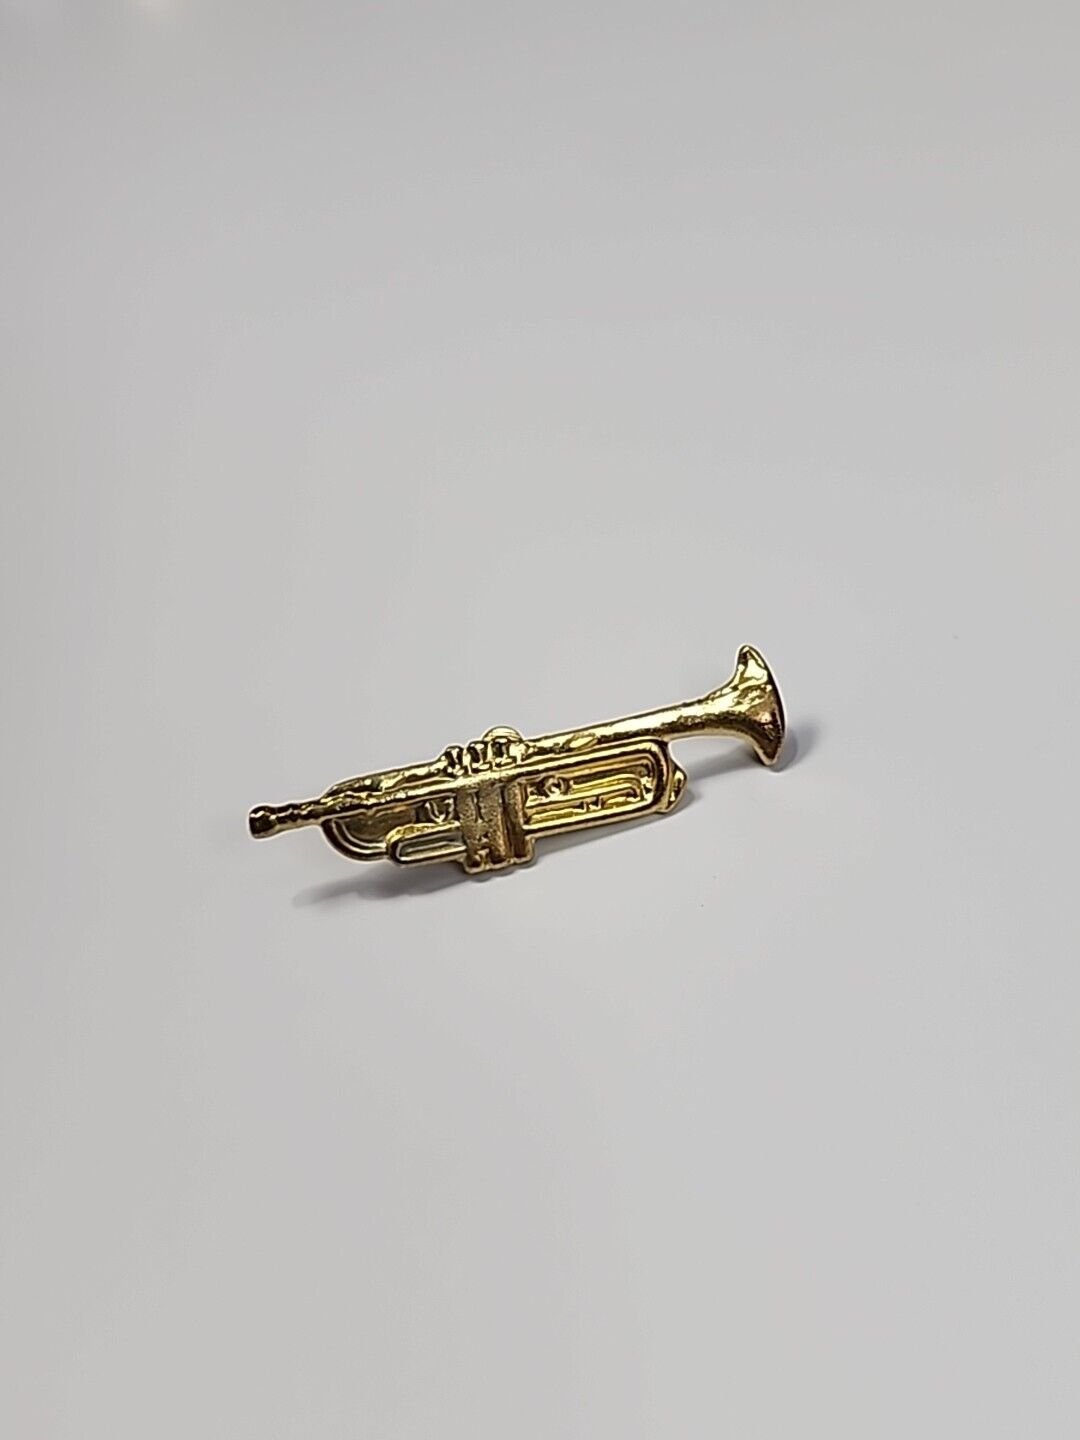 Trumpet Lapel Pin Gold Color Metal 